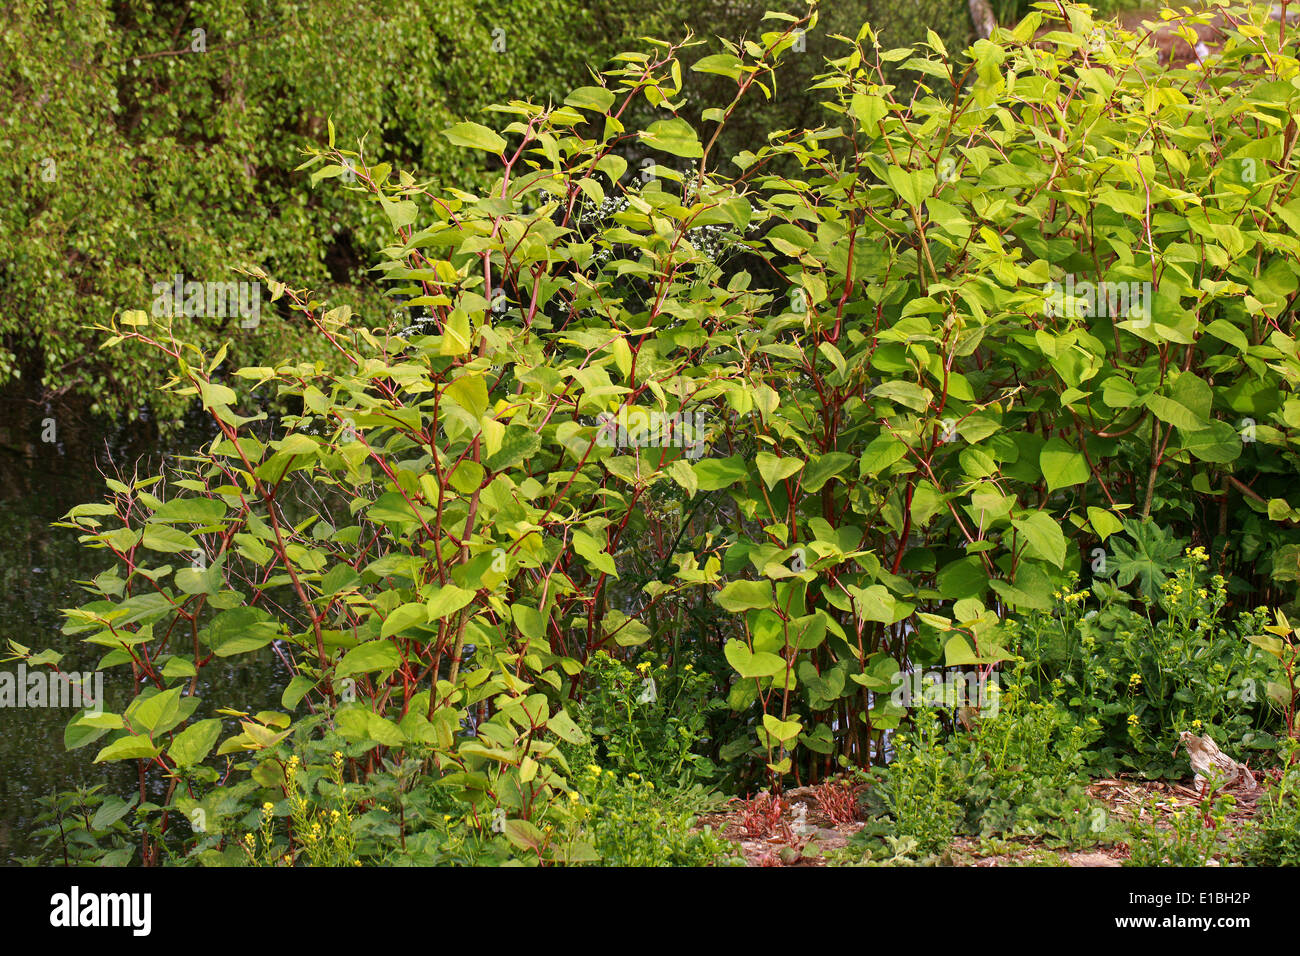 La renouée japonaise, Fallopia japonica, Polygonacées. Syn. Polygonum cuspidatum. Banque D'Images